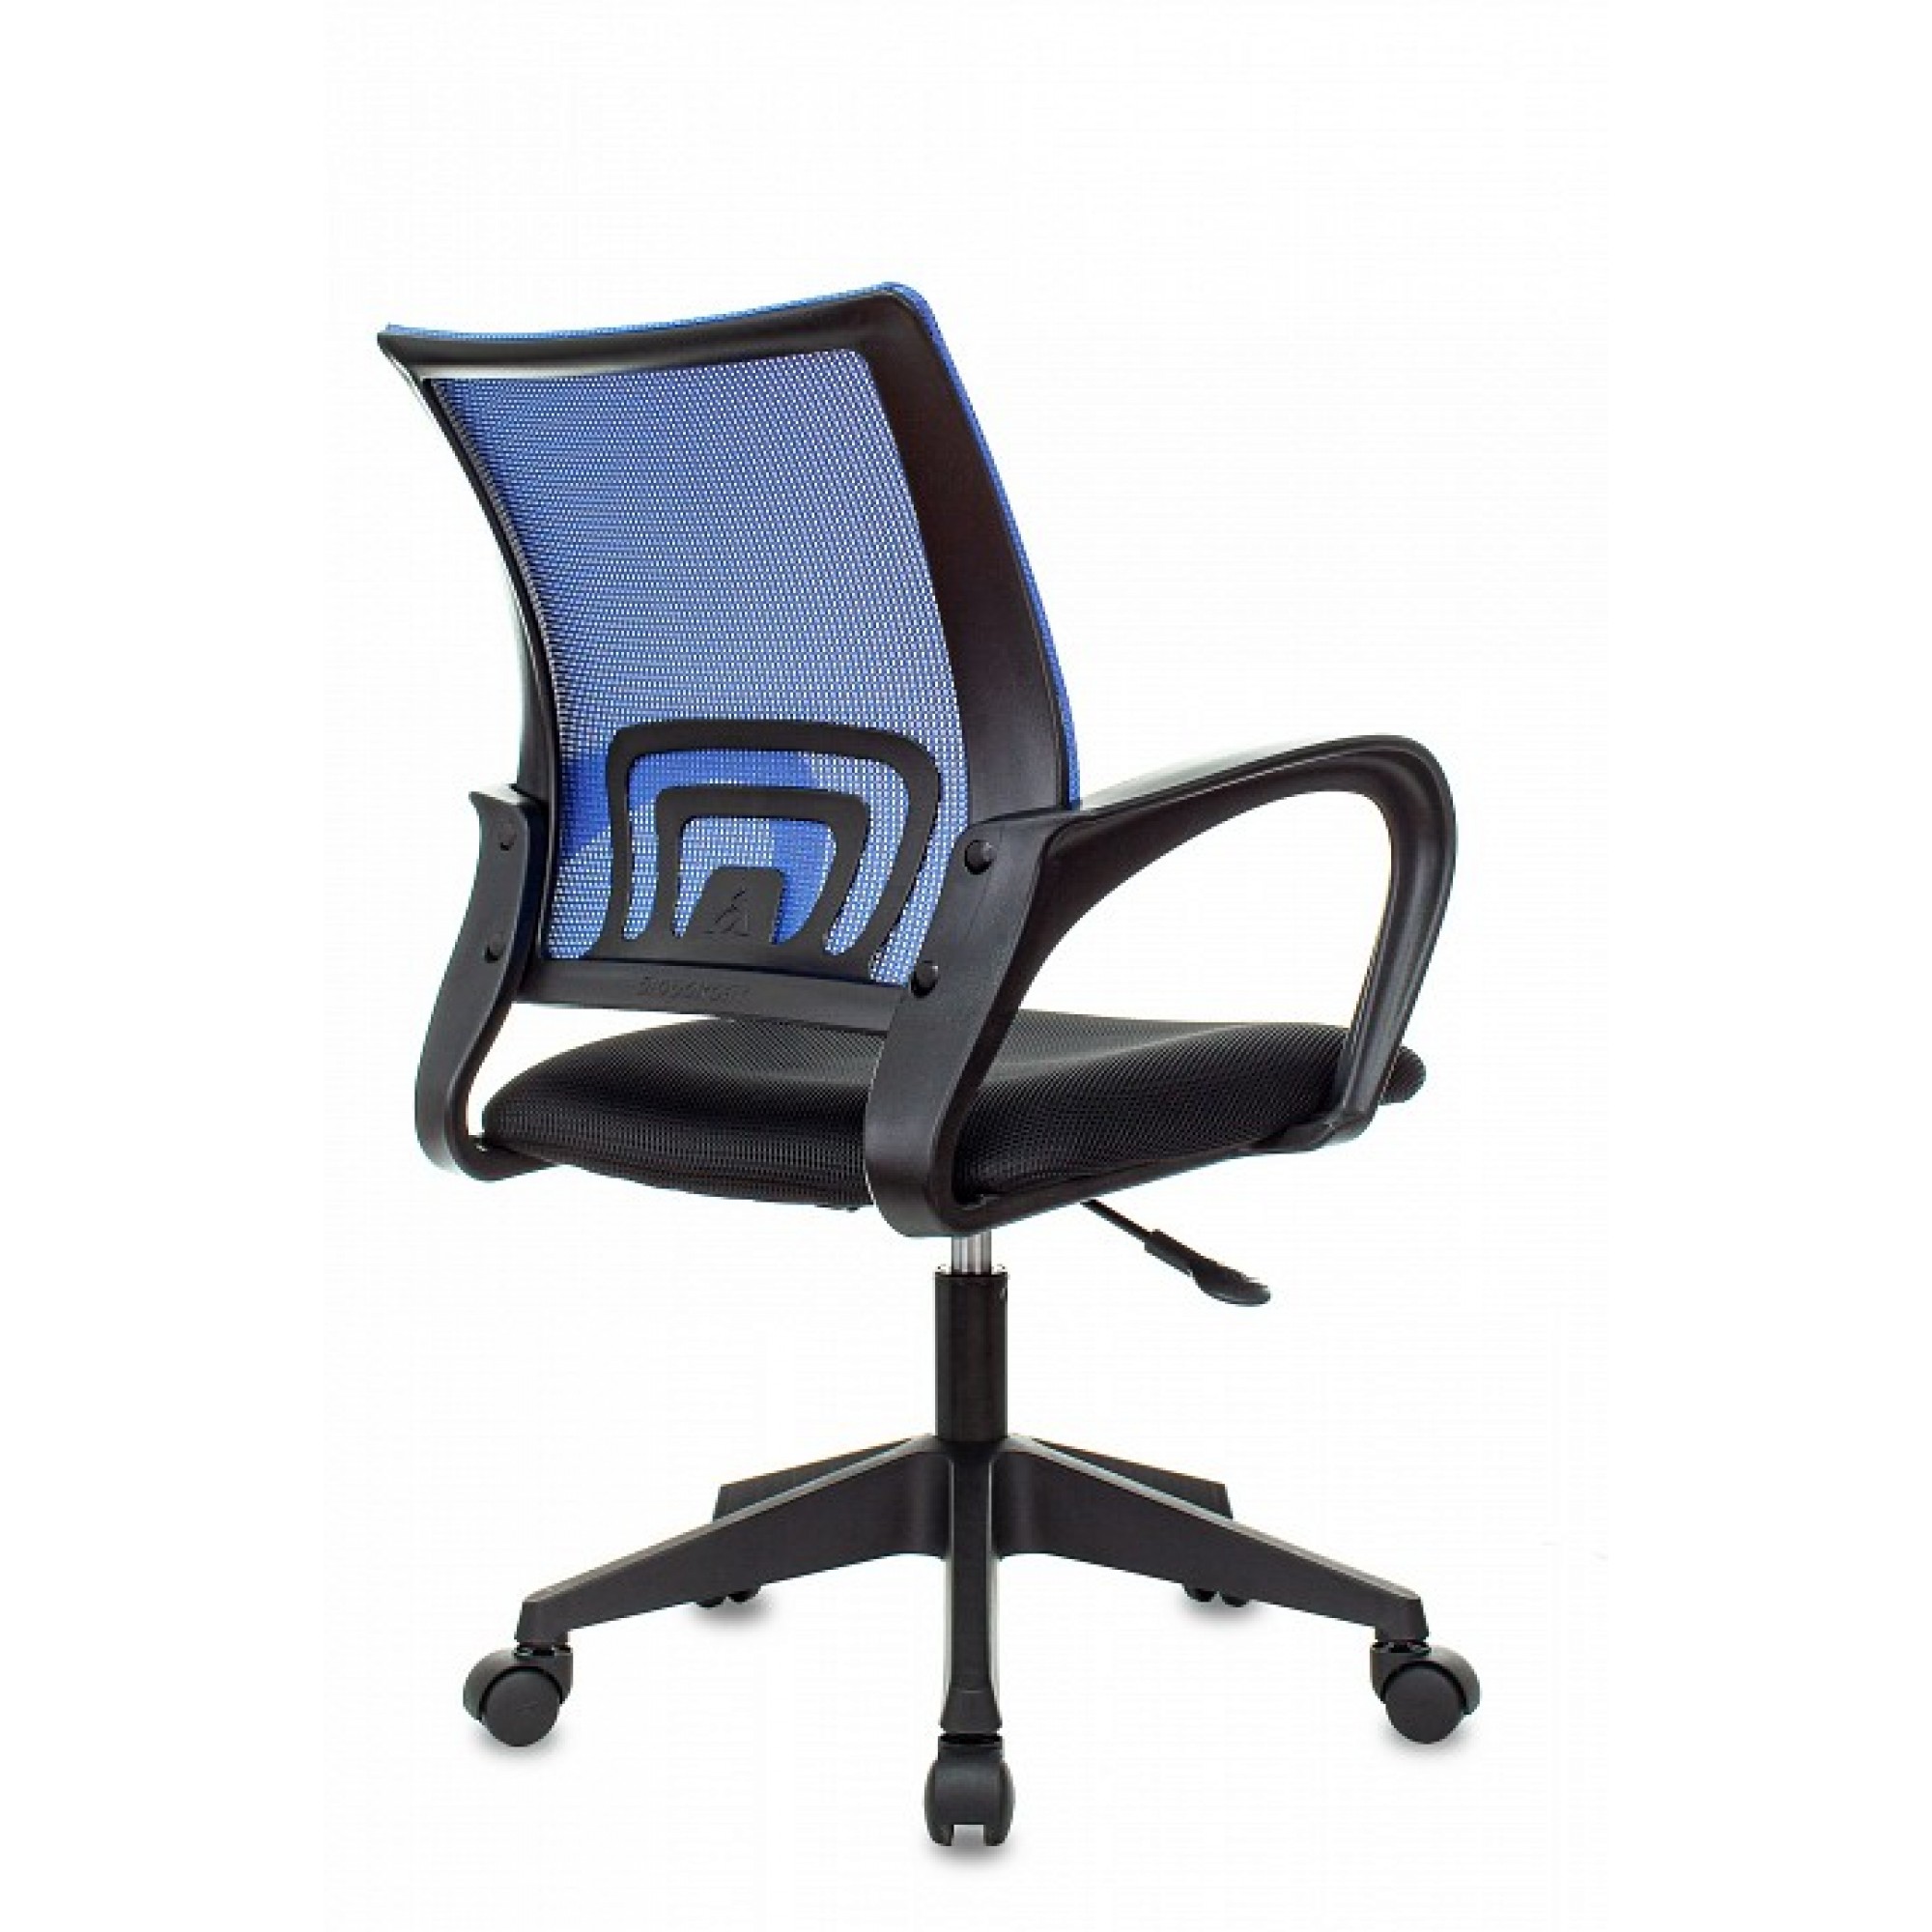 Кресло компьютерное CH-695NLT голубой BUR_1800502